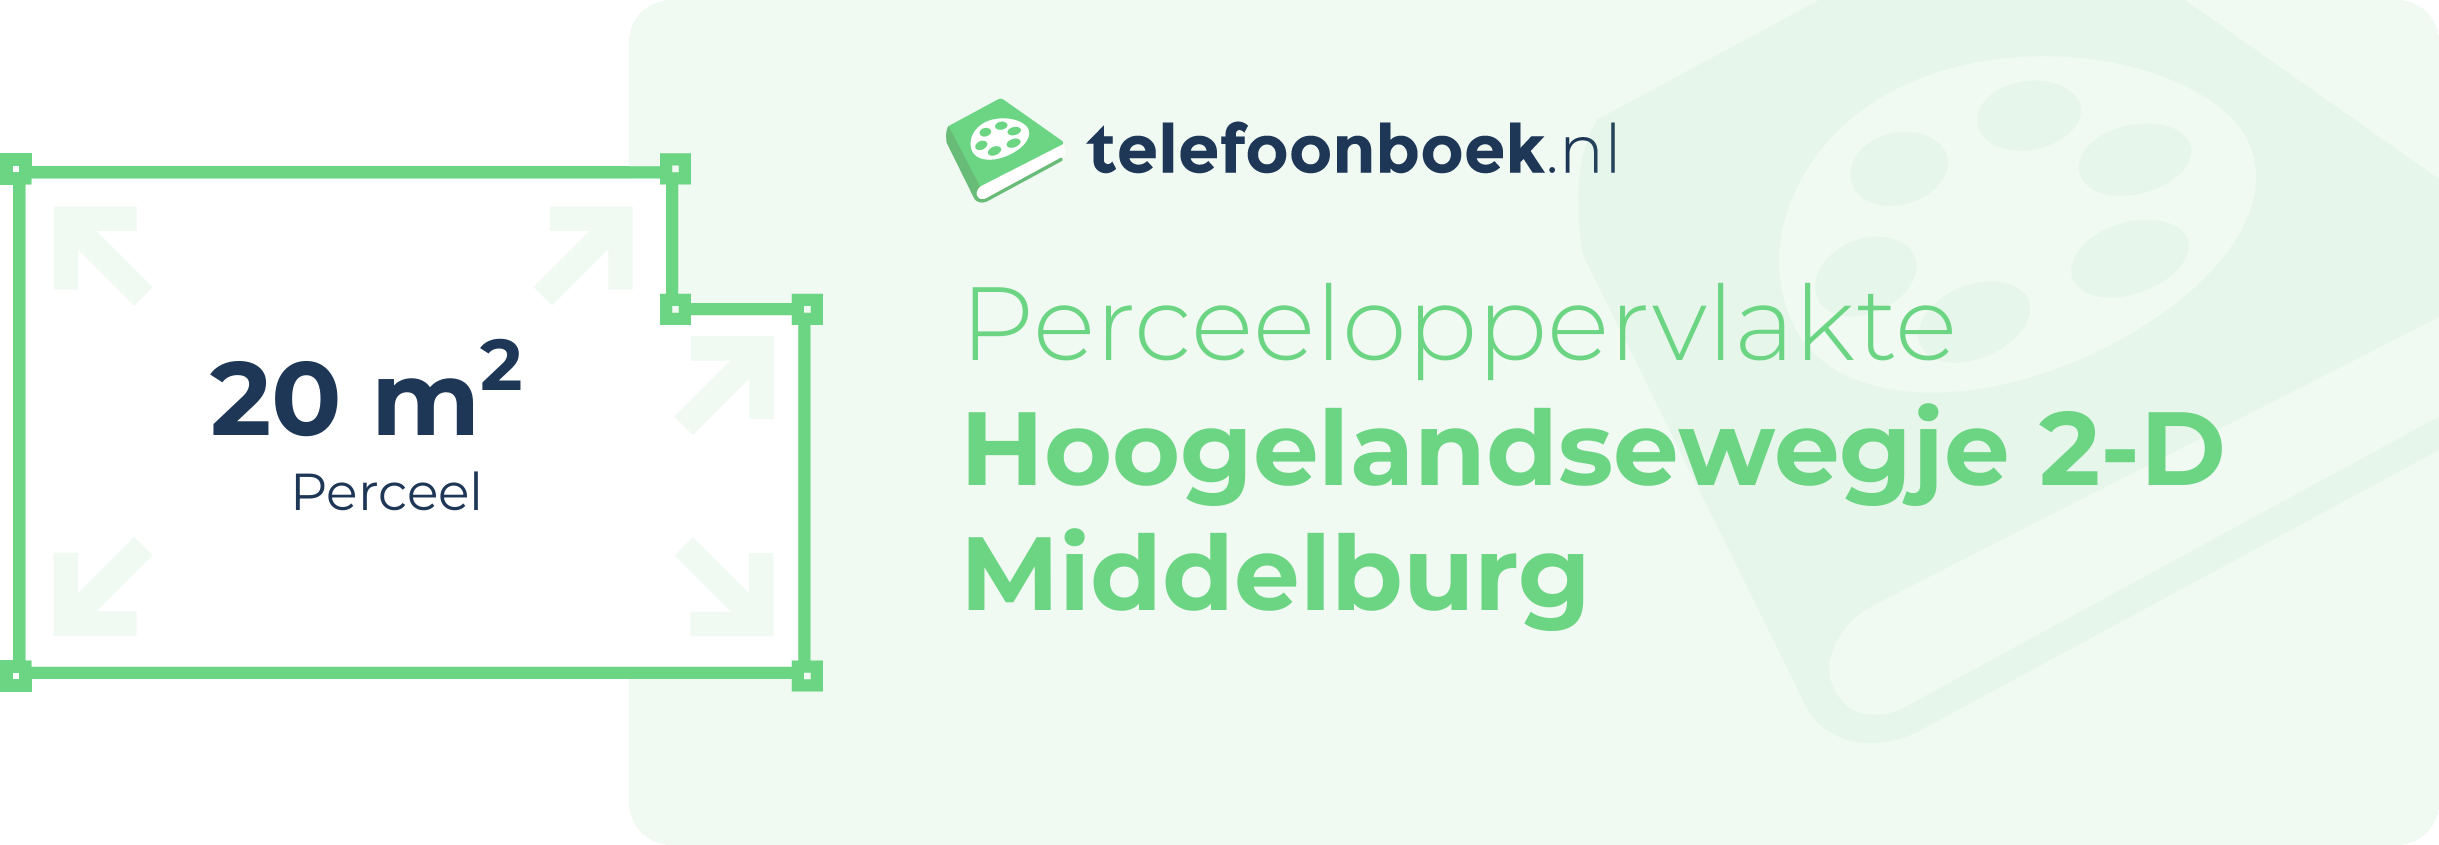 Perceeloppervlakte Hoogelandsewegje 2-D Middelburg